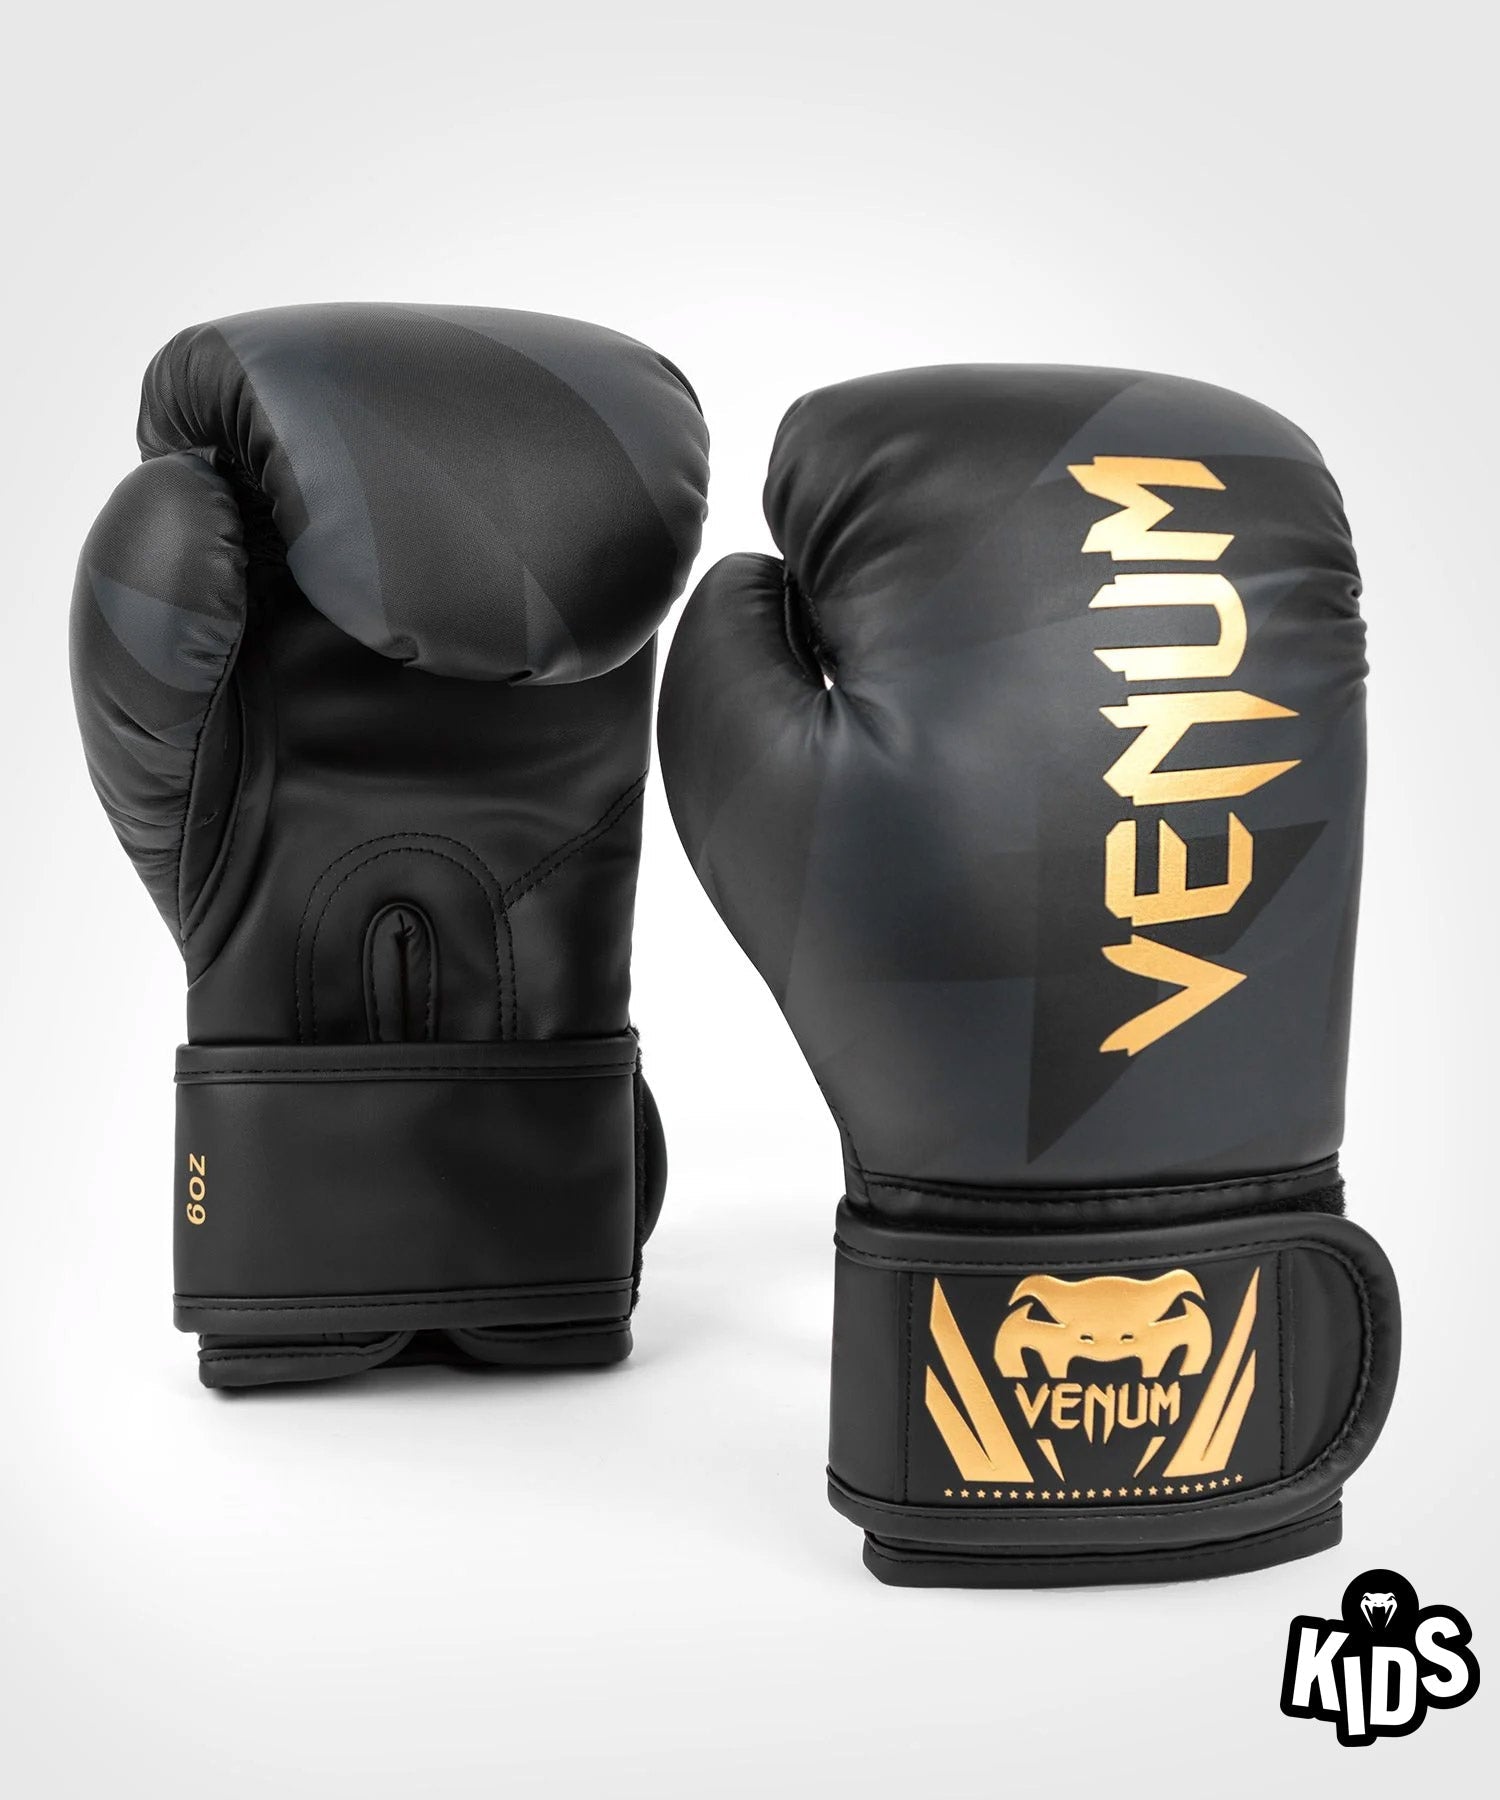 Venum Razor ボクシング グローブ - 子供用 - ブラック/ゴールド